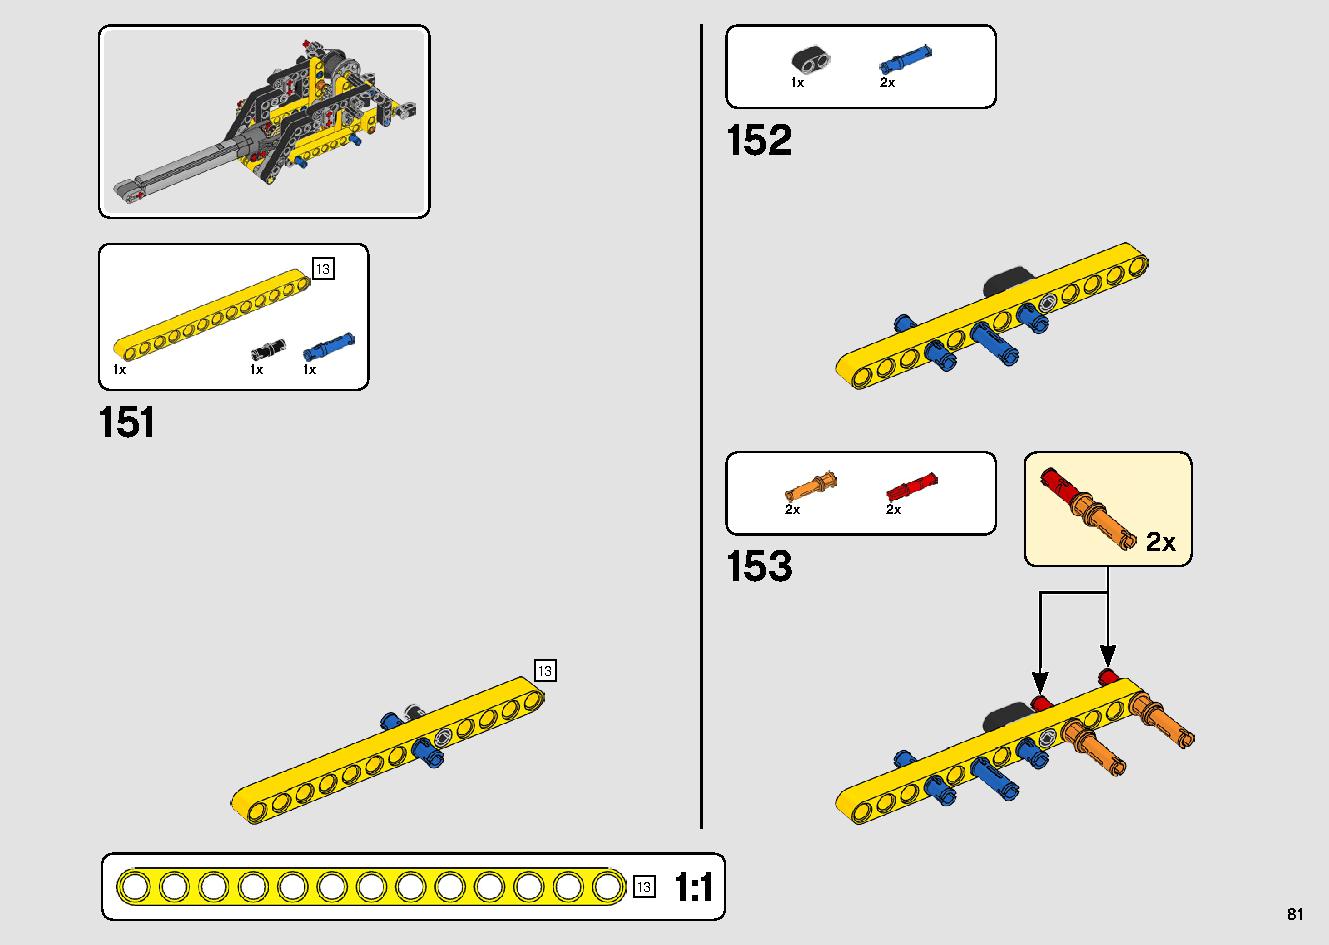 移動式クレーン車 42108 レゴの商品情報 レゴの説明書・組立方法 81 page